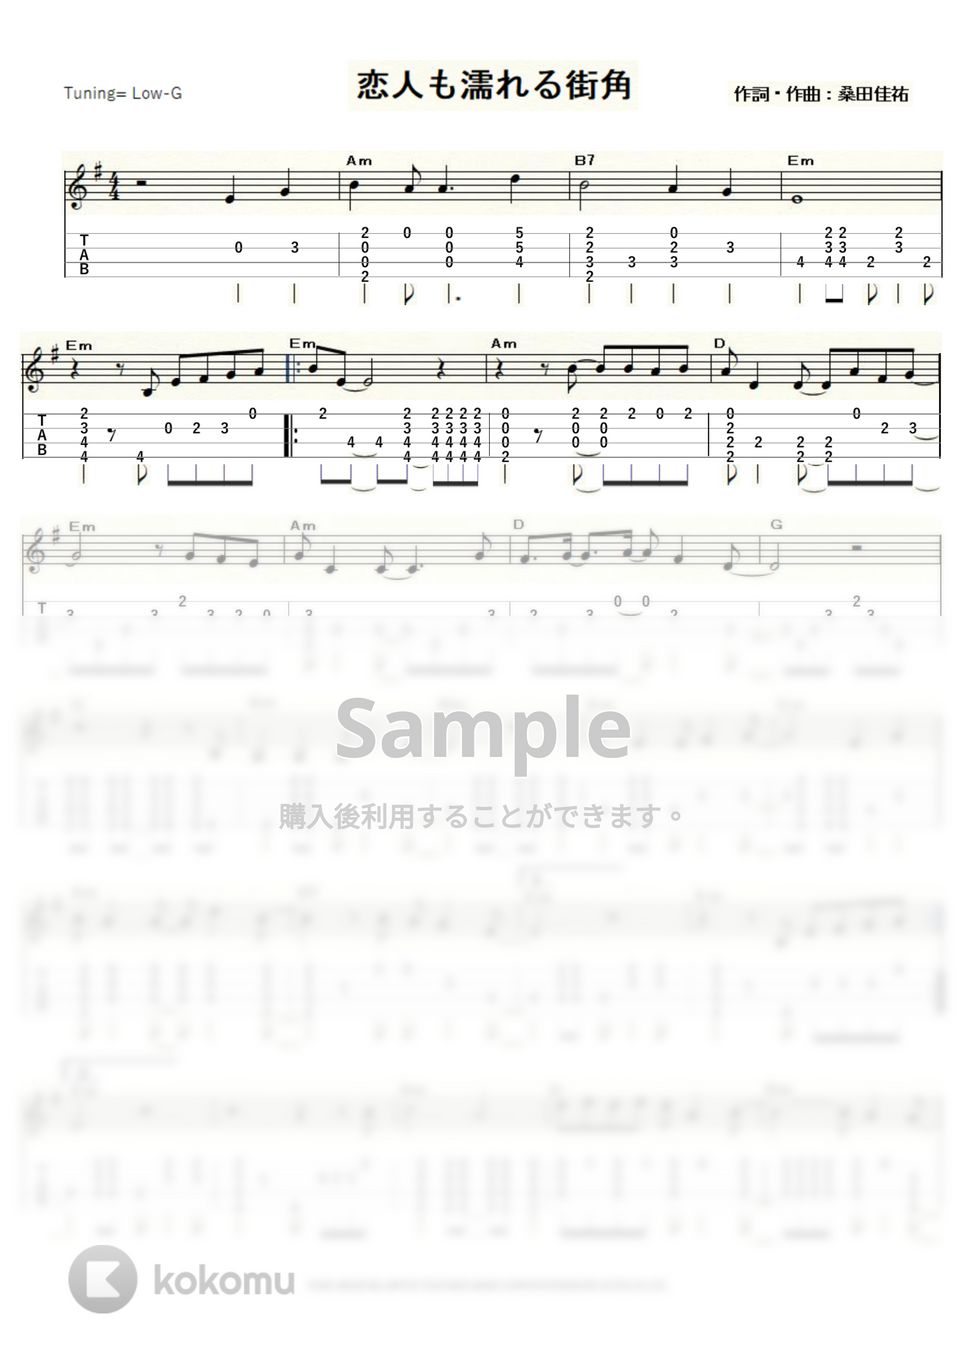 中村雅俊 - 恋人も濡れる街角 (ｳｸﾚﾚｿﾛ / Low-G / 上級) by ukulelepapa